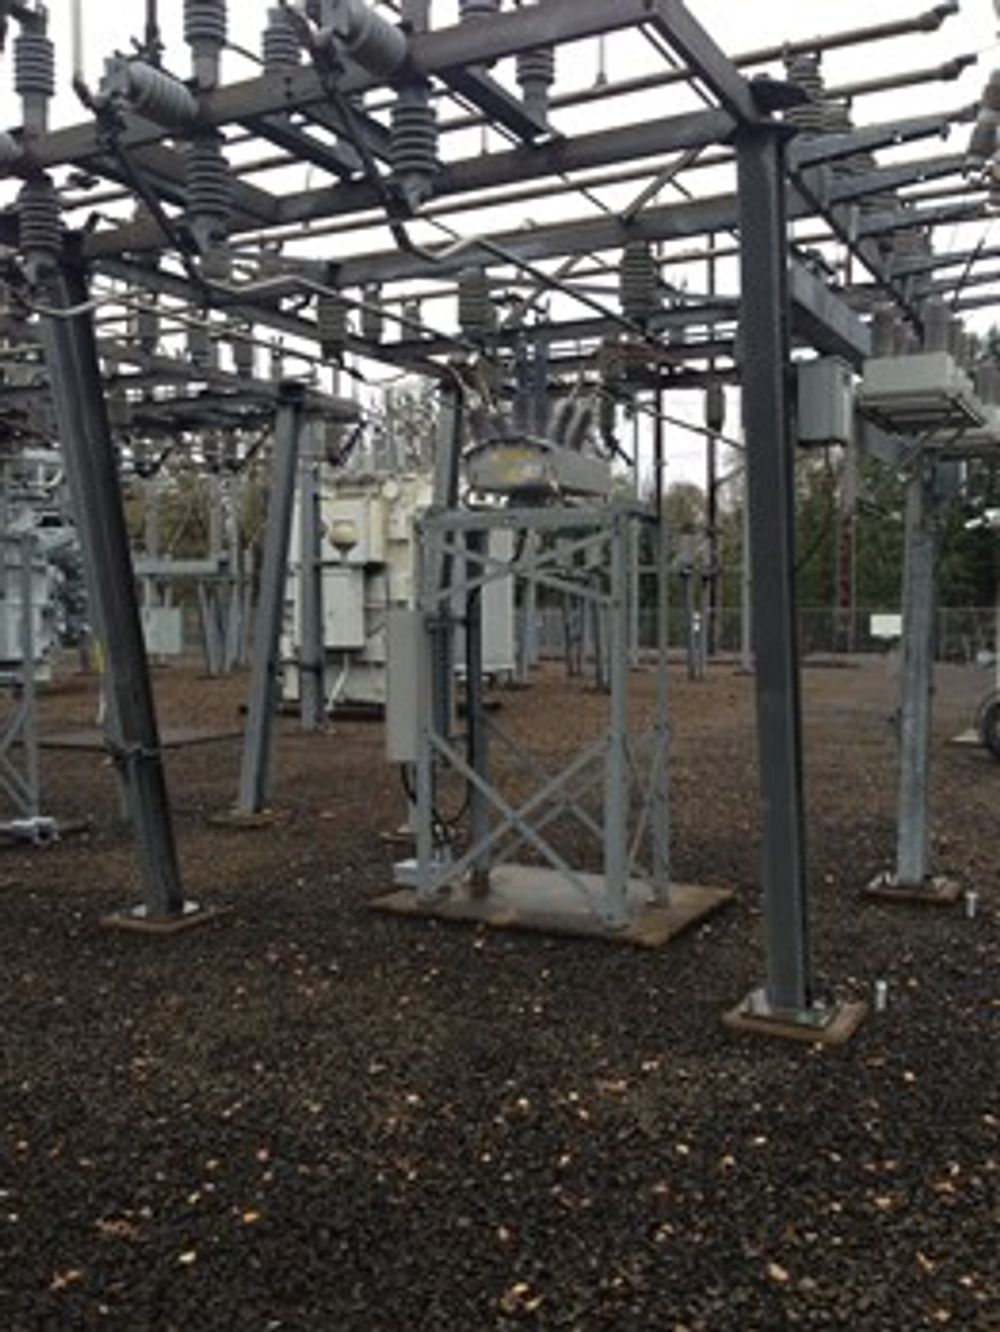 Religadores OSM NOJA Power instalados na Subestação Elmira, em Eugene Oregon, EUA.